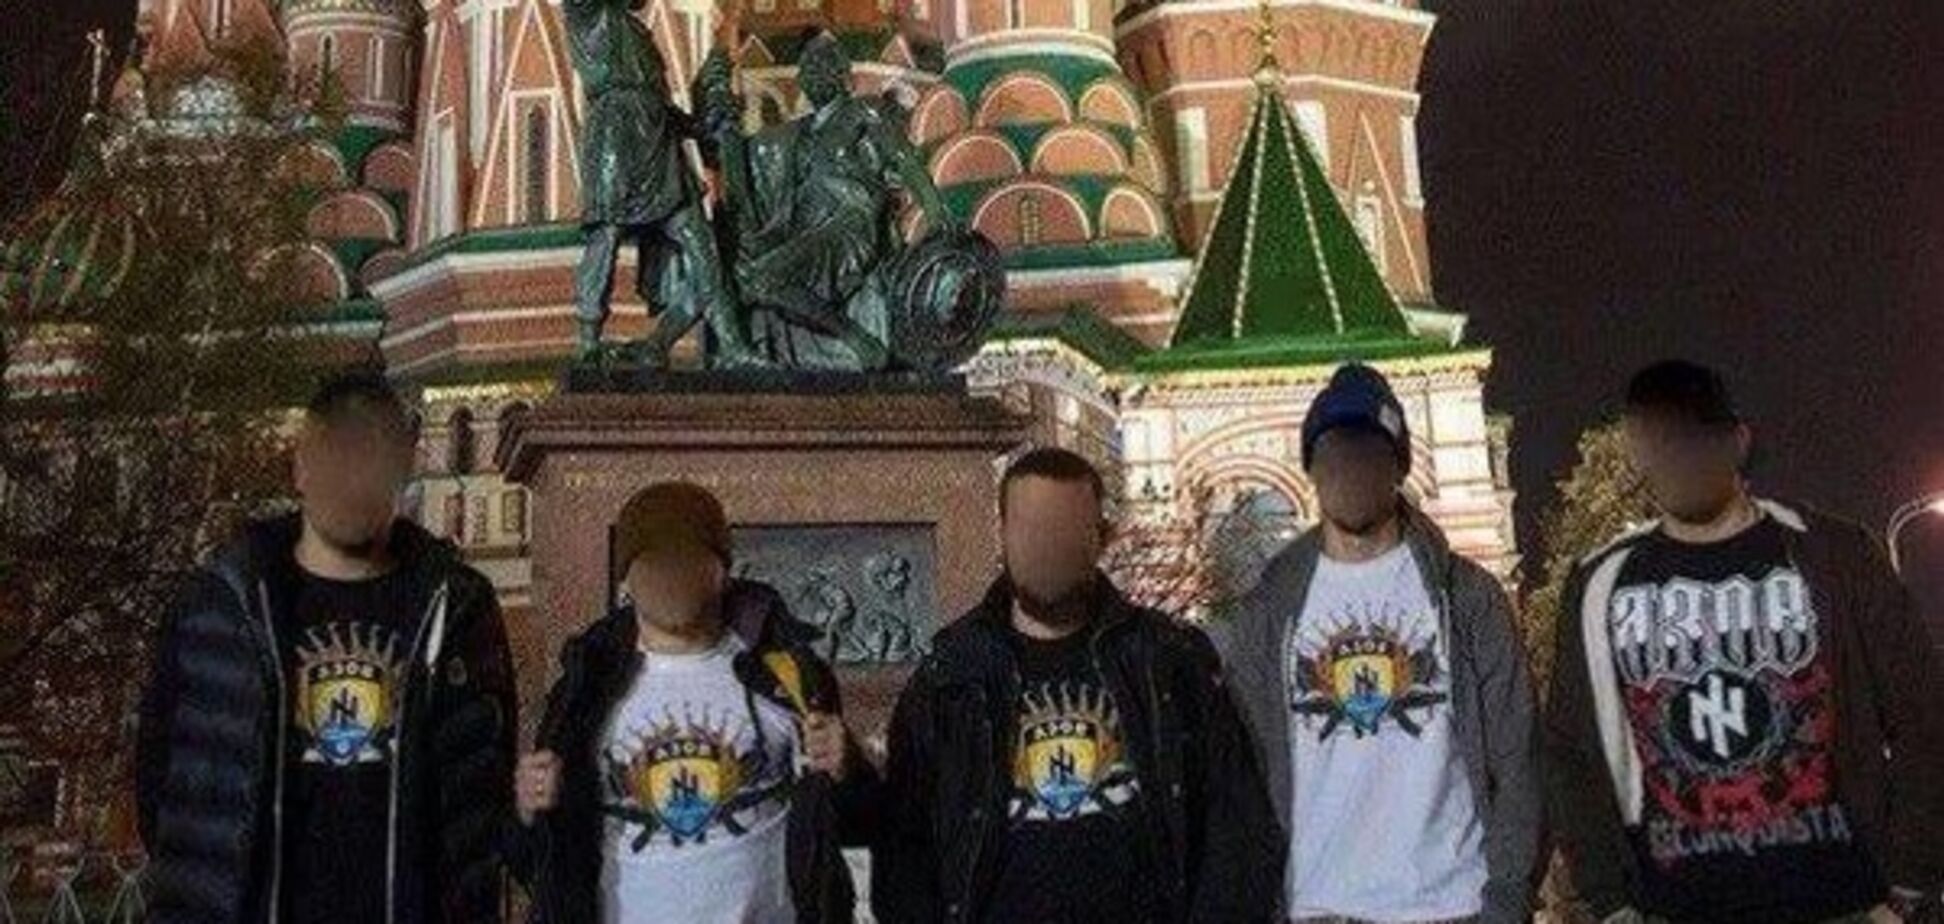 'Мы рядом!': 'каратели' в футболках 'Азова' передали привет Путину с Красной площади. Фотофакт